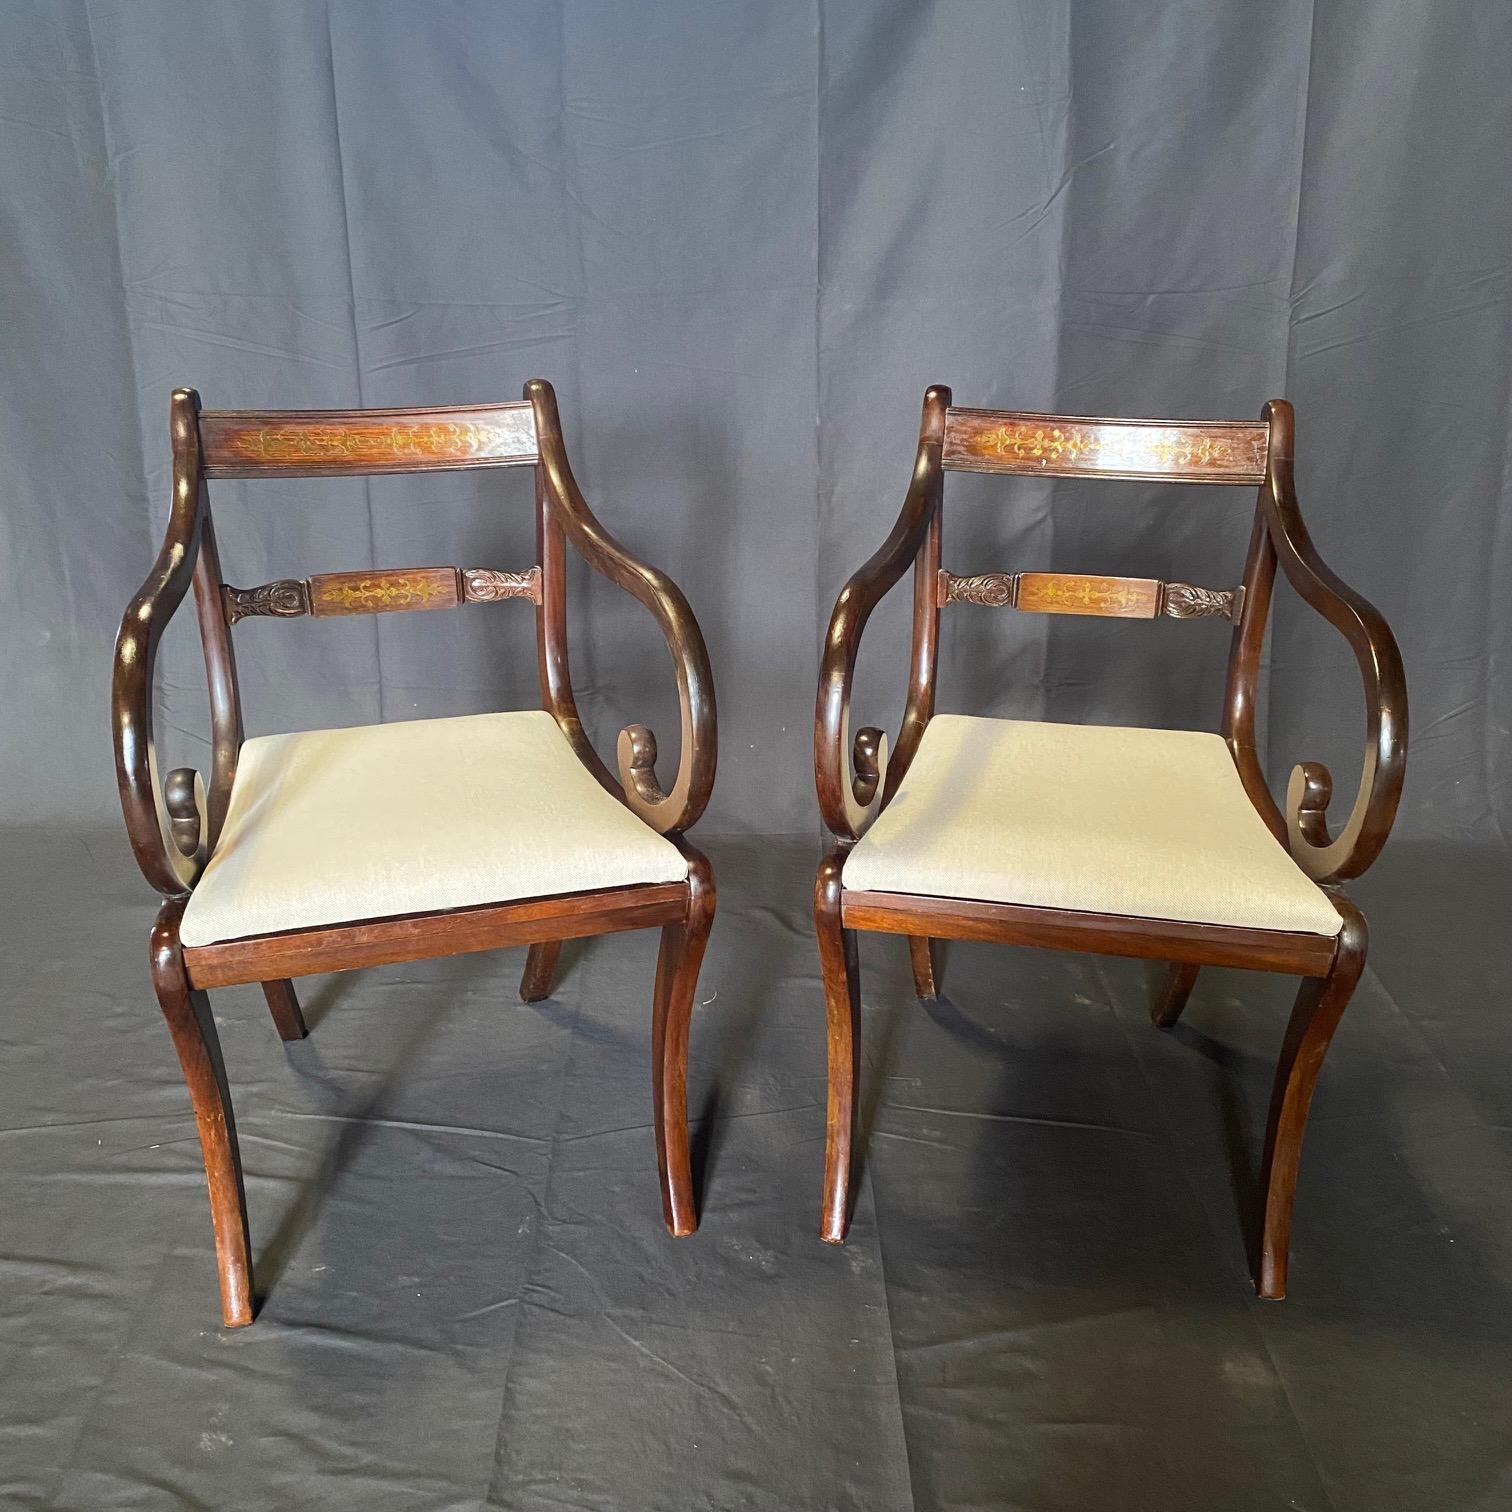 Superbe ensemble britannique de six chaises de salle à manger Regency Revival en laiton incrusté, de forme Klismos, datant du début du 20e siècle. Ces chaises ont été fabriquées de main de maître avec des incrustations décoratives en laiton sur les